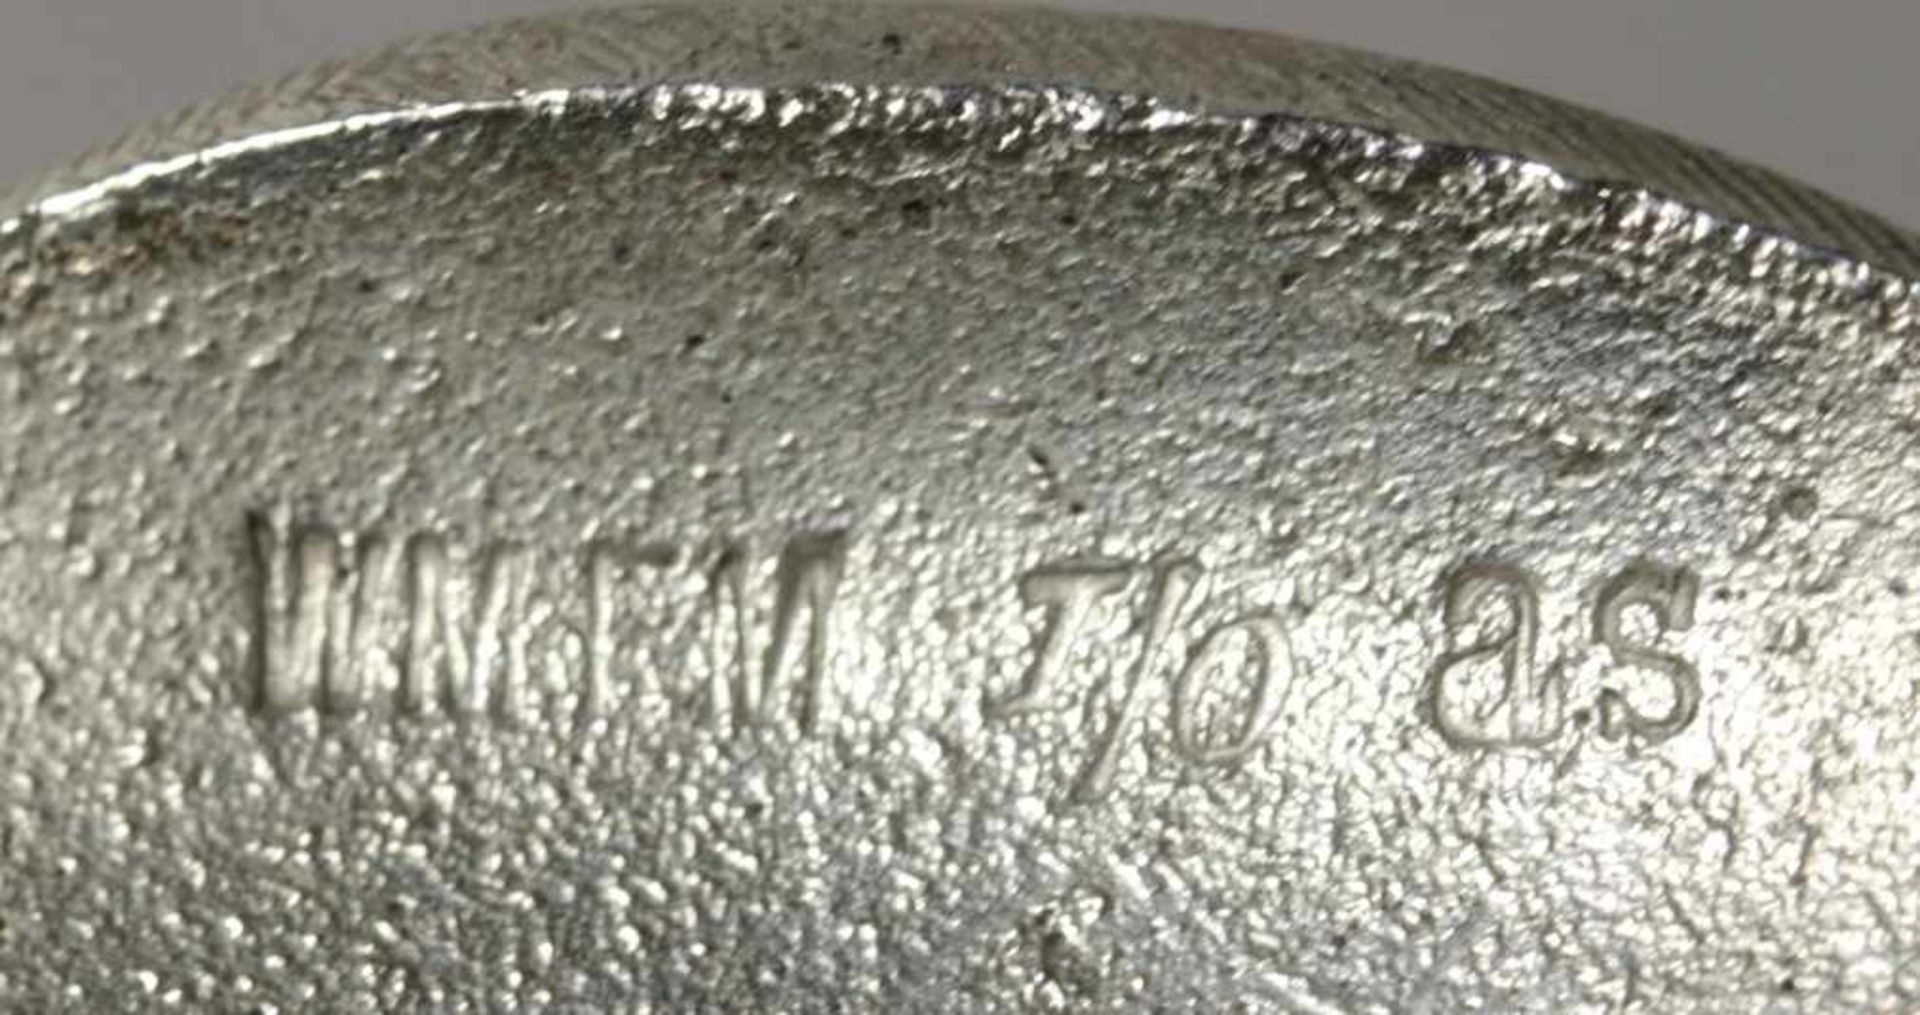 Britanniametall-Messerständer, WMF, Geislingen, um 1910, versilbert, aufgewölbter Stand inForm - Bild 2 aus 2